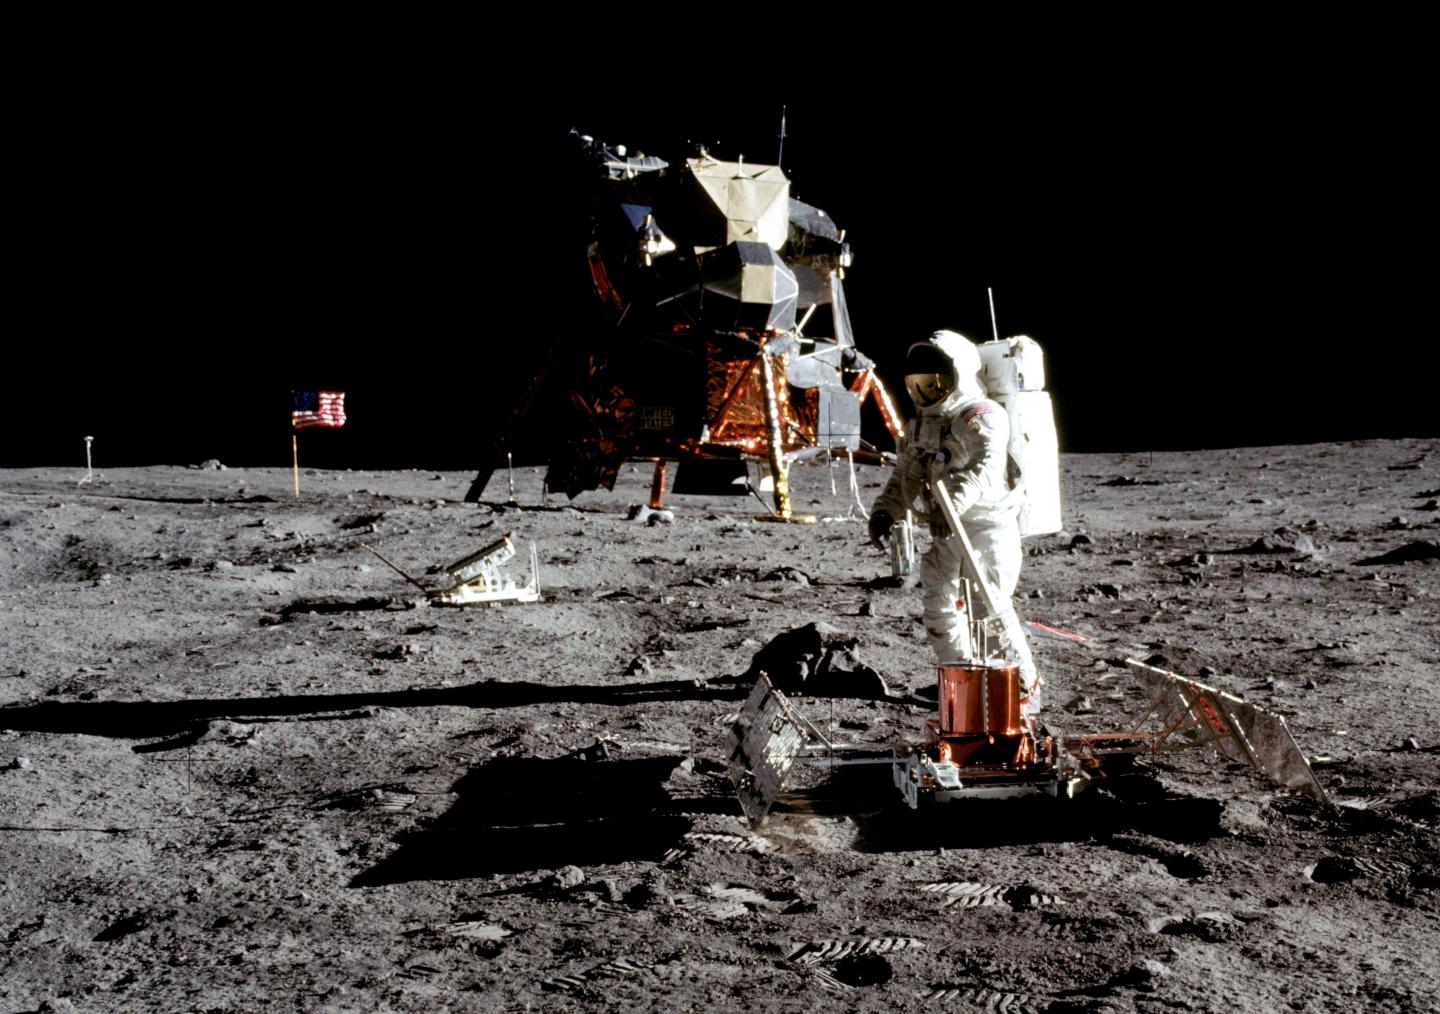 Photograph by Neil Armstrong of Apollo 11 astronaut Buzz Aldrin